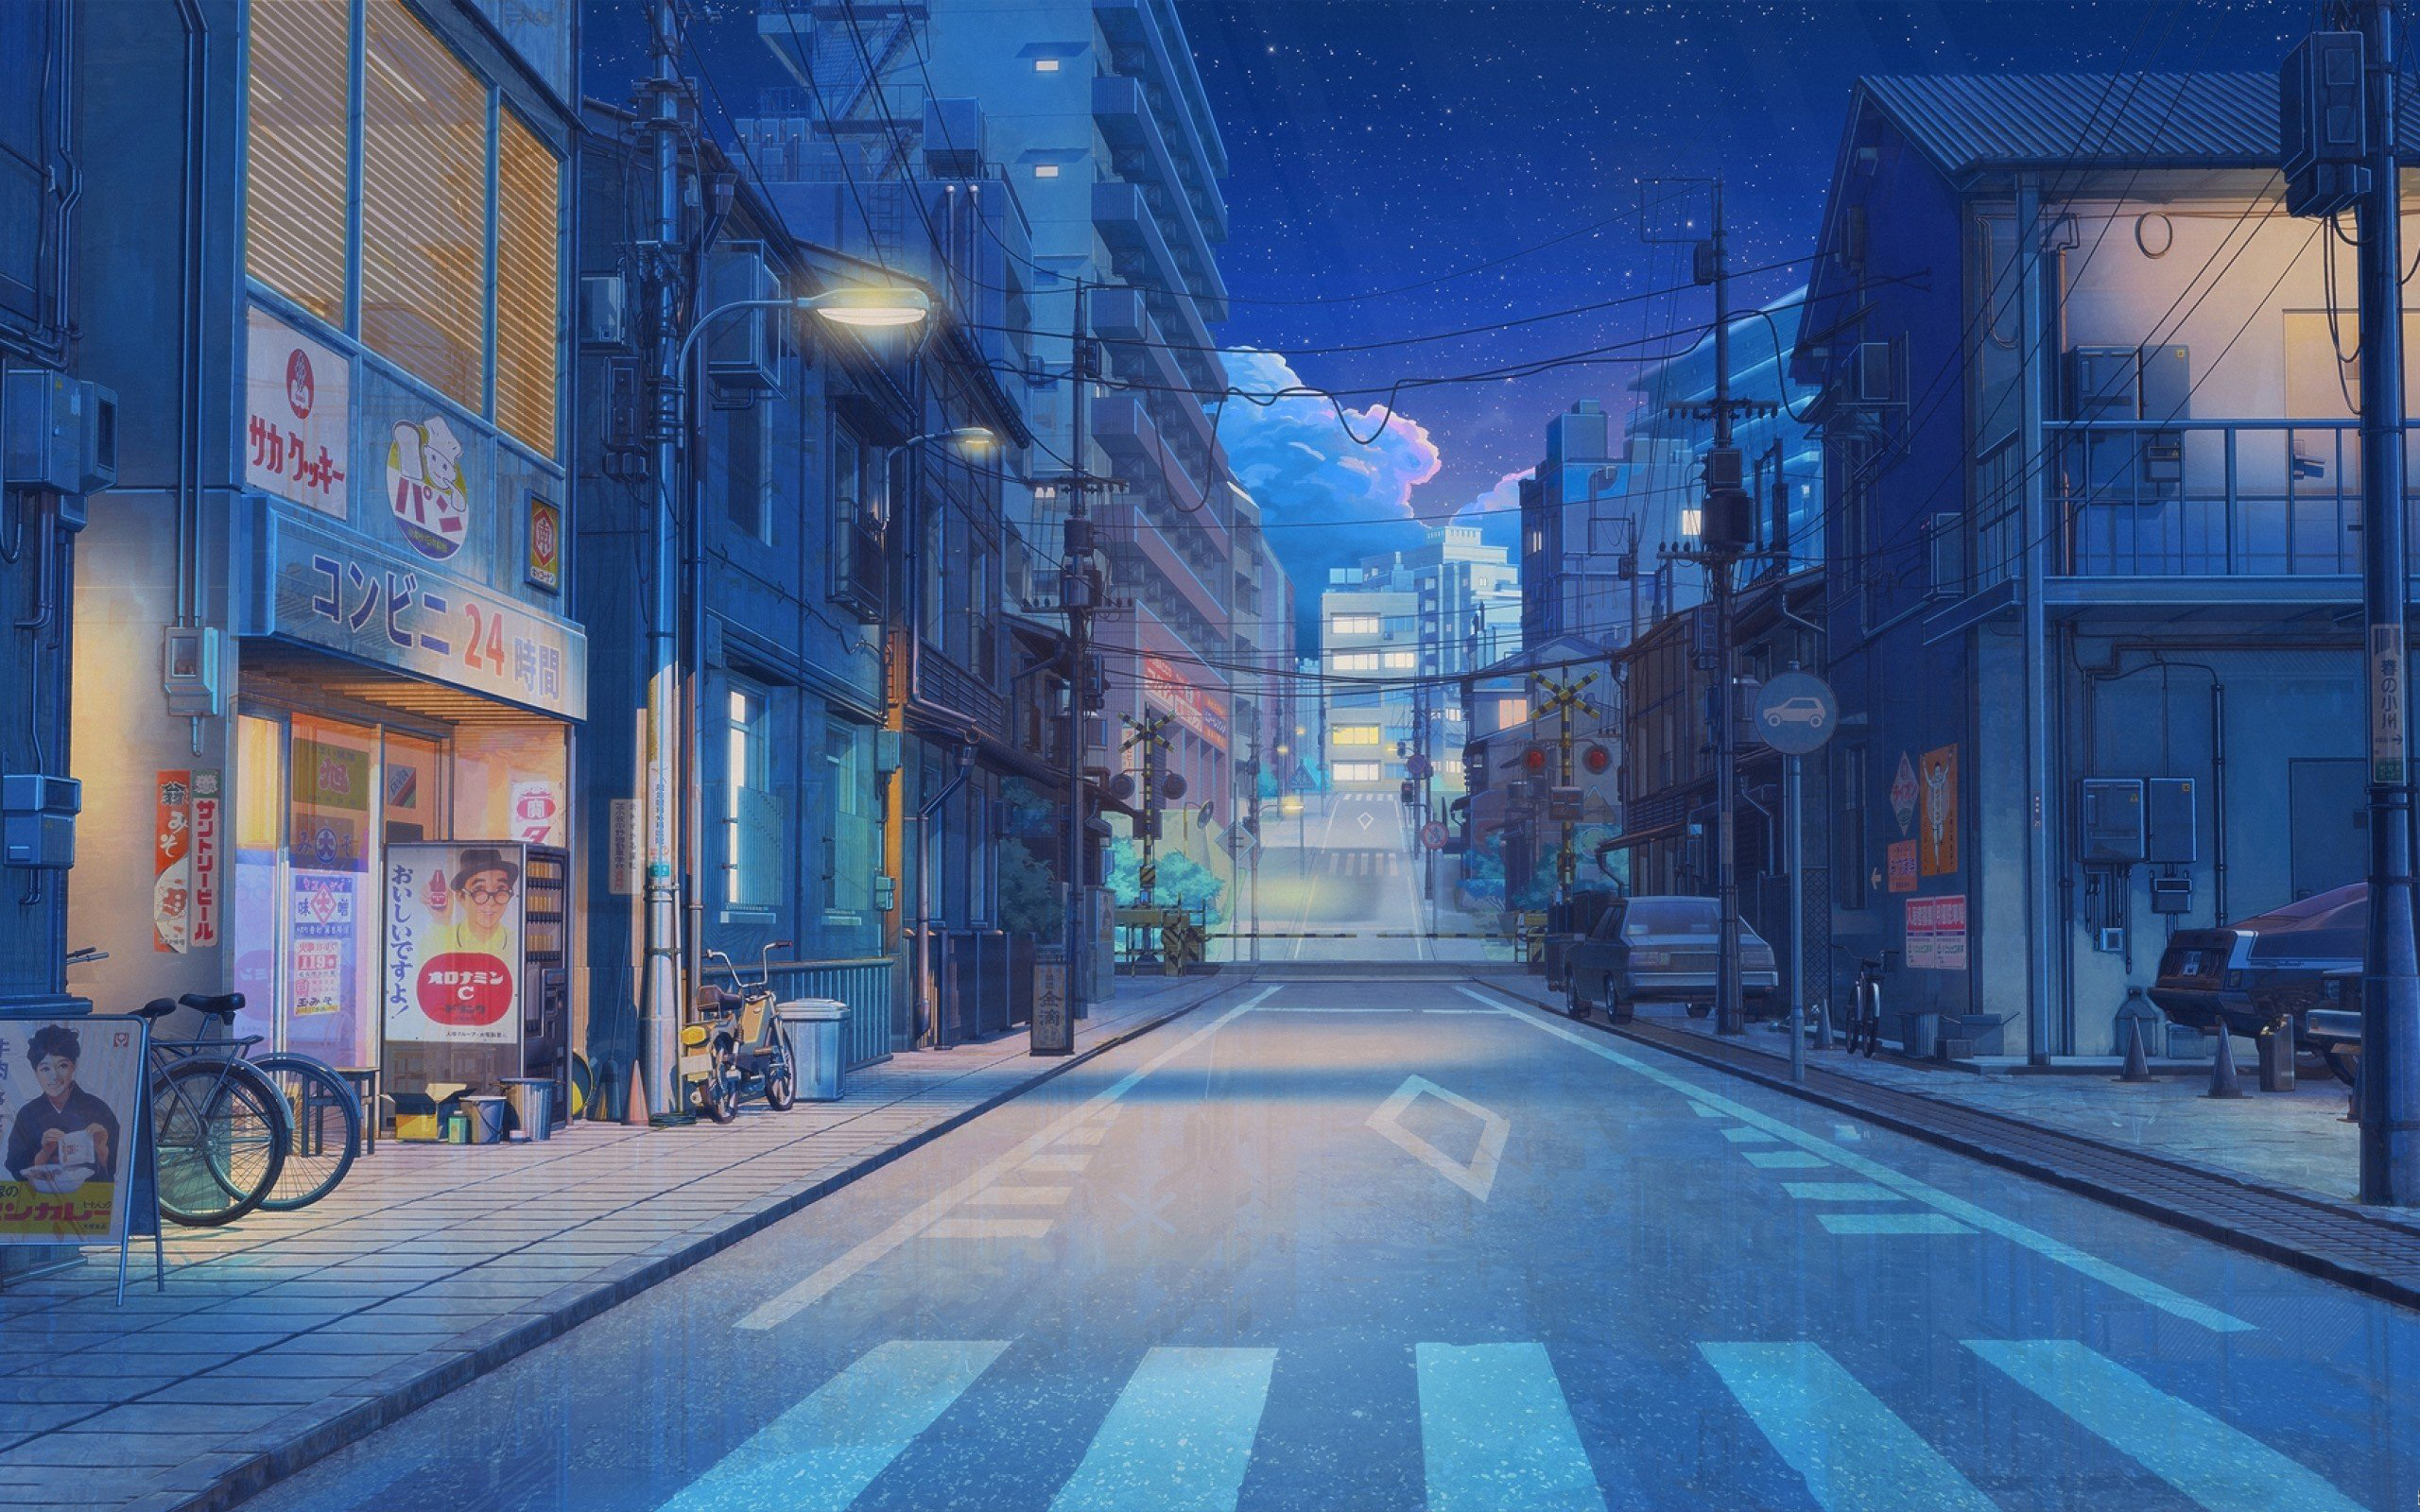 Thành phố anime đêm là một nơi thu hút giới trẻ yêu thích văn hóa anime. Đây là nơi tập trung nhiều quán cafe, cửa hàng manga và các hoạt động văn hóa khác. Hãy xem hình ảnh để cảm nhận sự phát triển của văn hóa anime trong thành phố đầy sáng tạo này!